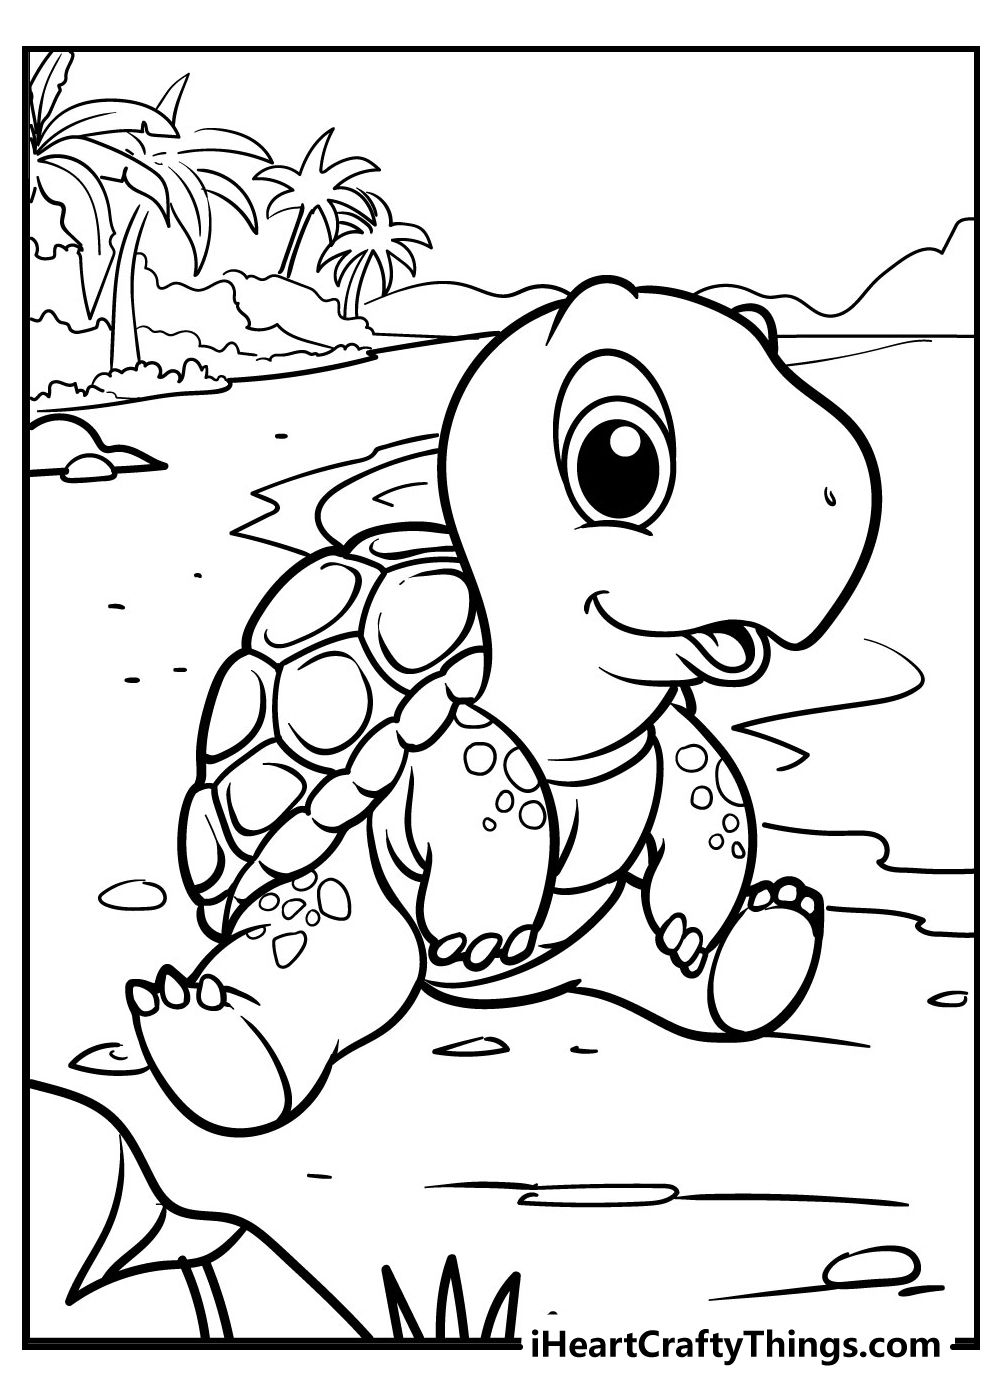 Turtle coloring pages turtle coloring pages coloring pages cartoon coloring pages